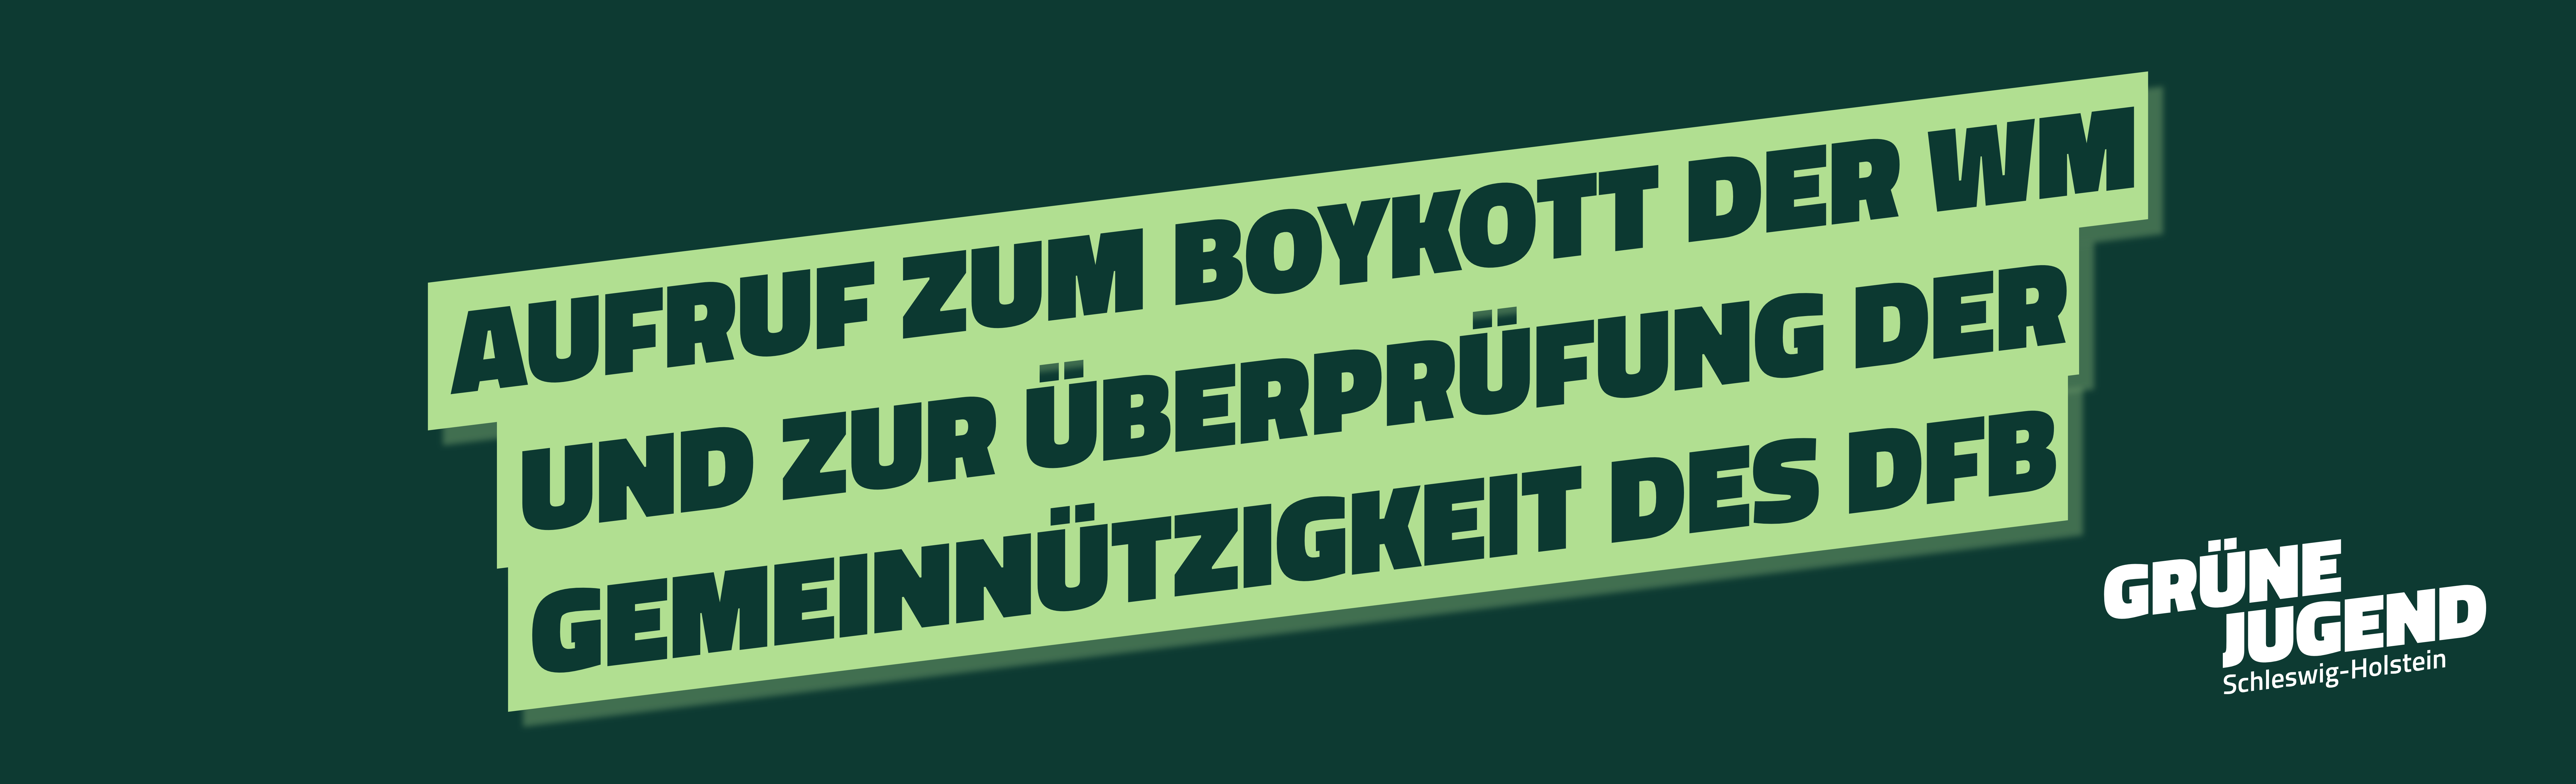 Gemeinsamer Aufruf zum Boykott der WM und zur Überprüfung der Gemeinnützigkeit des DFB